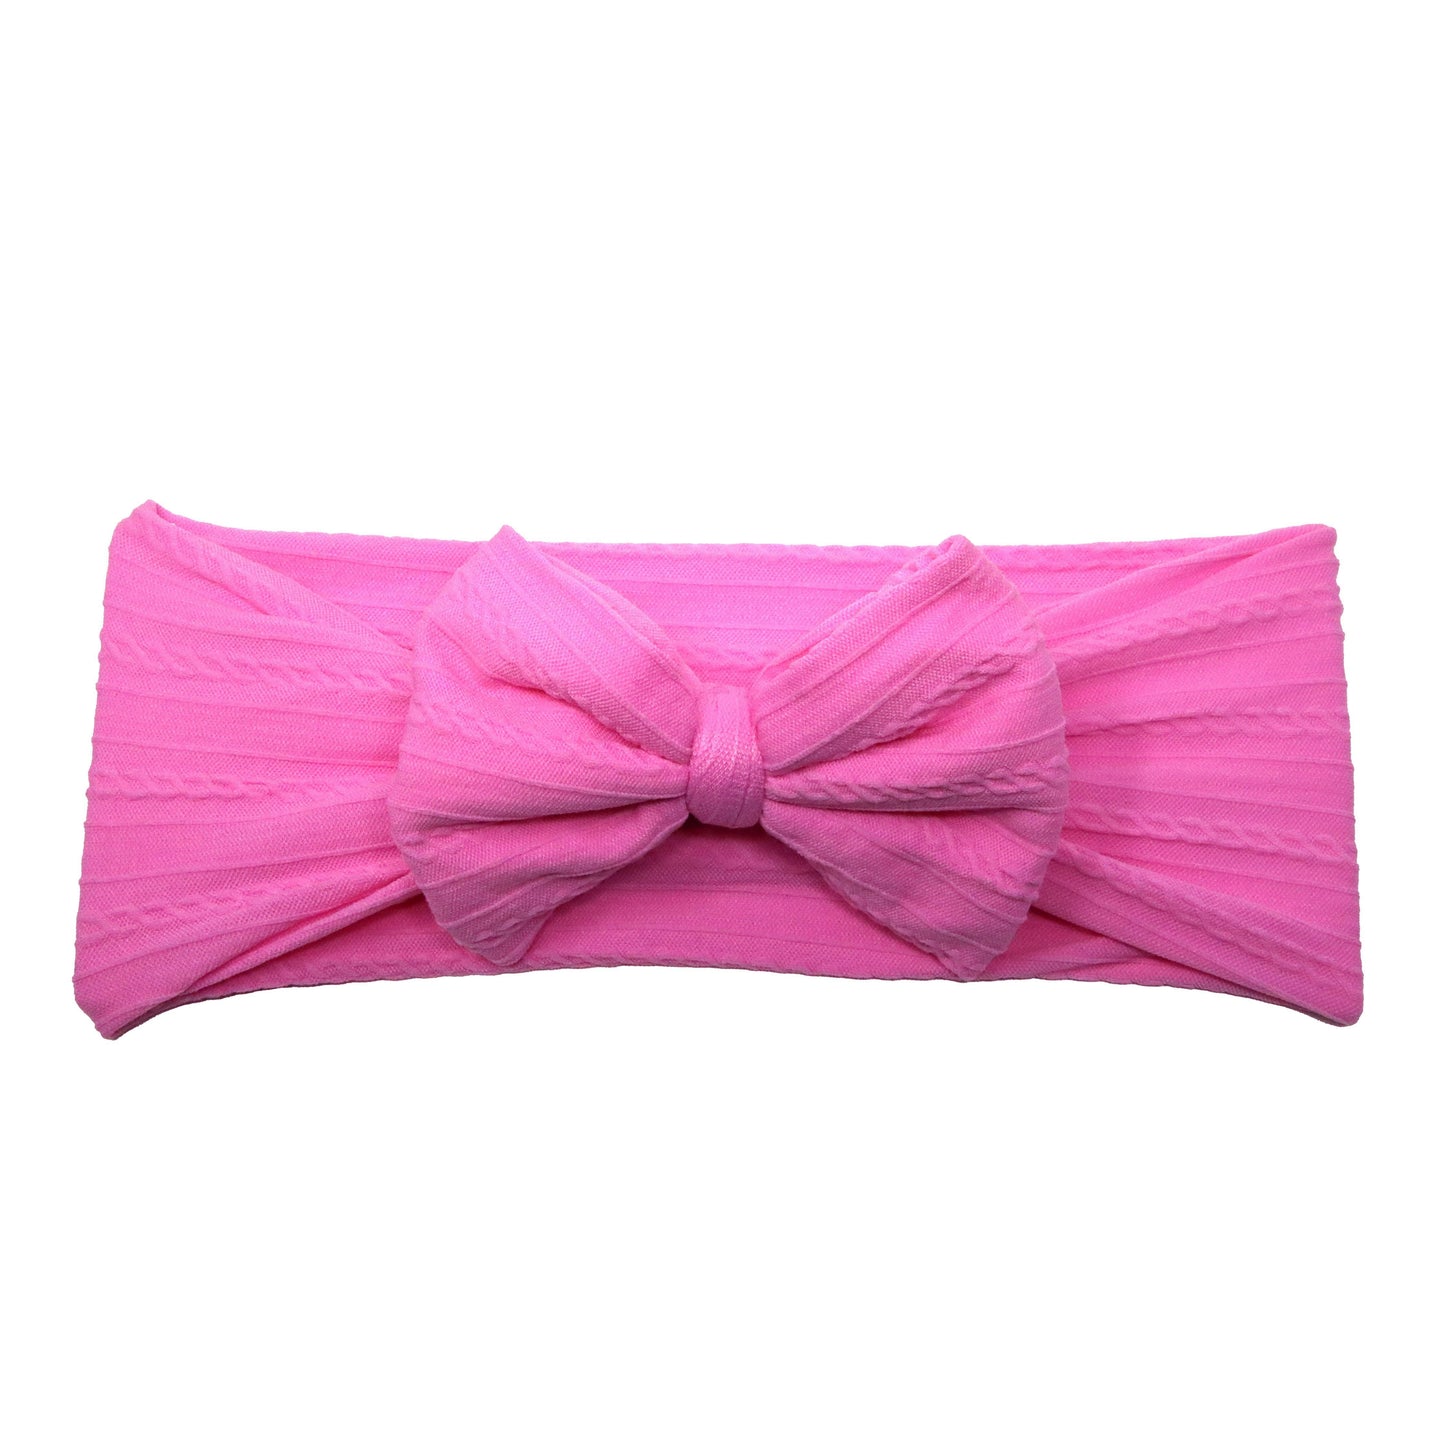 Pink Braid Knit Bow Headwrap 4"